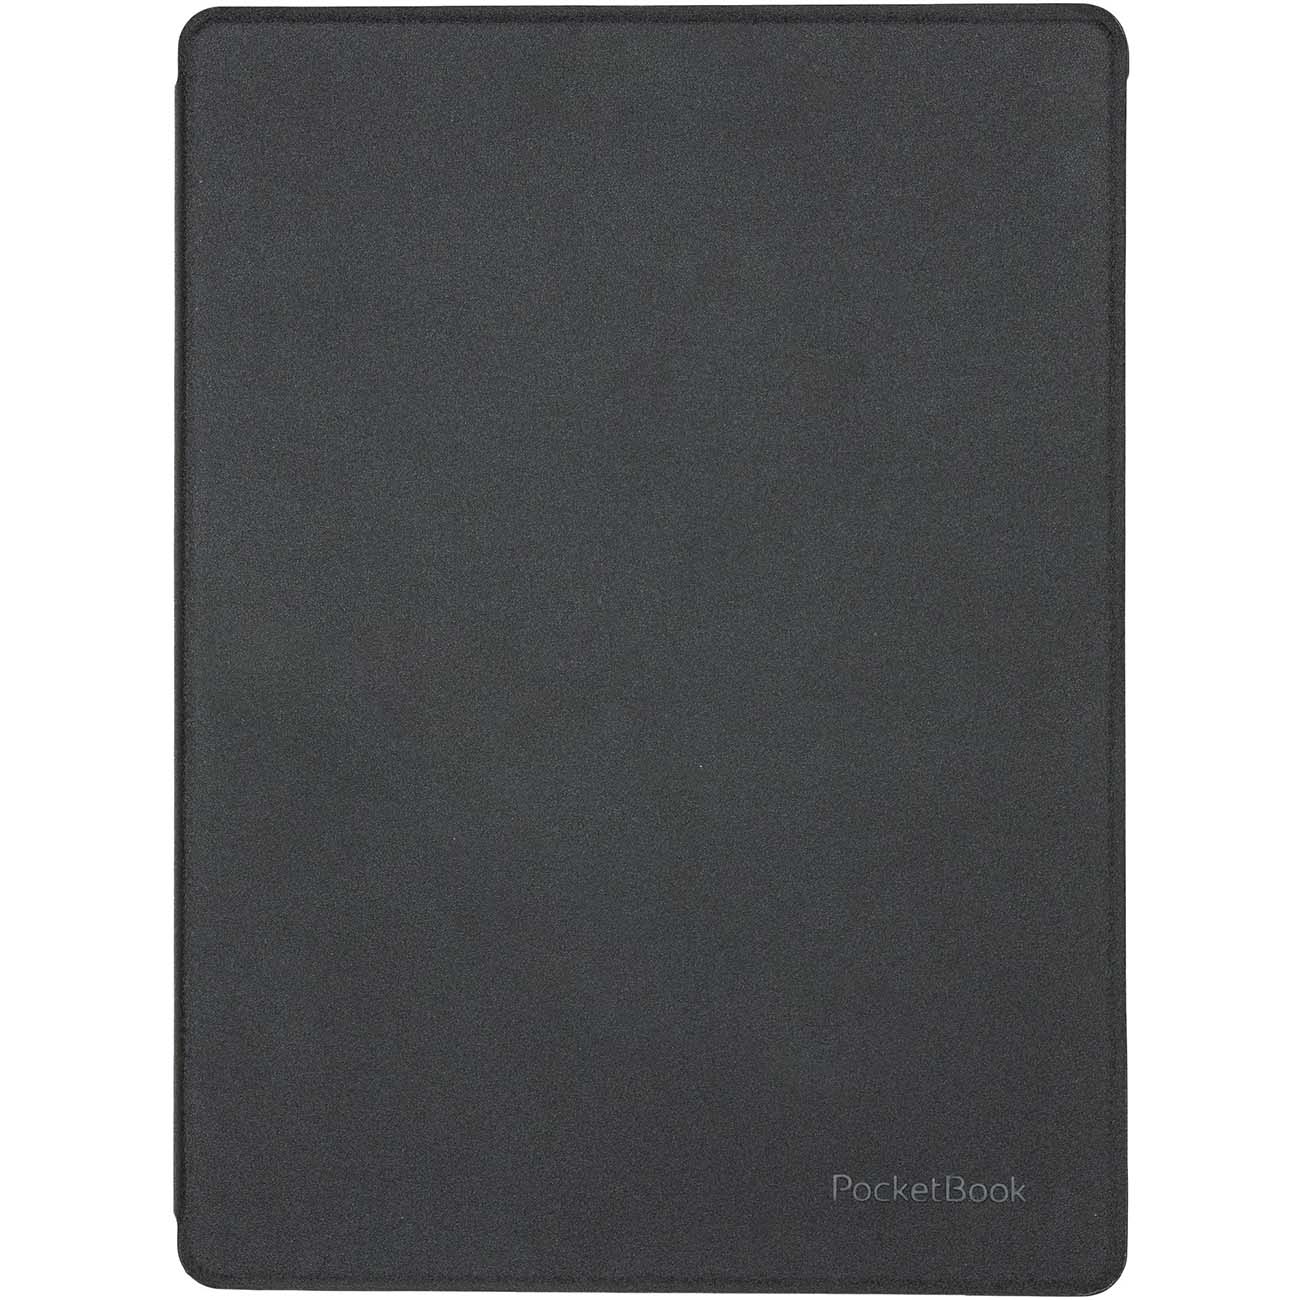 Оригинальная чехол-обложка дляPocketbook 970 (HN-SL-PU-970-BK-WW) shell-cover черный